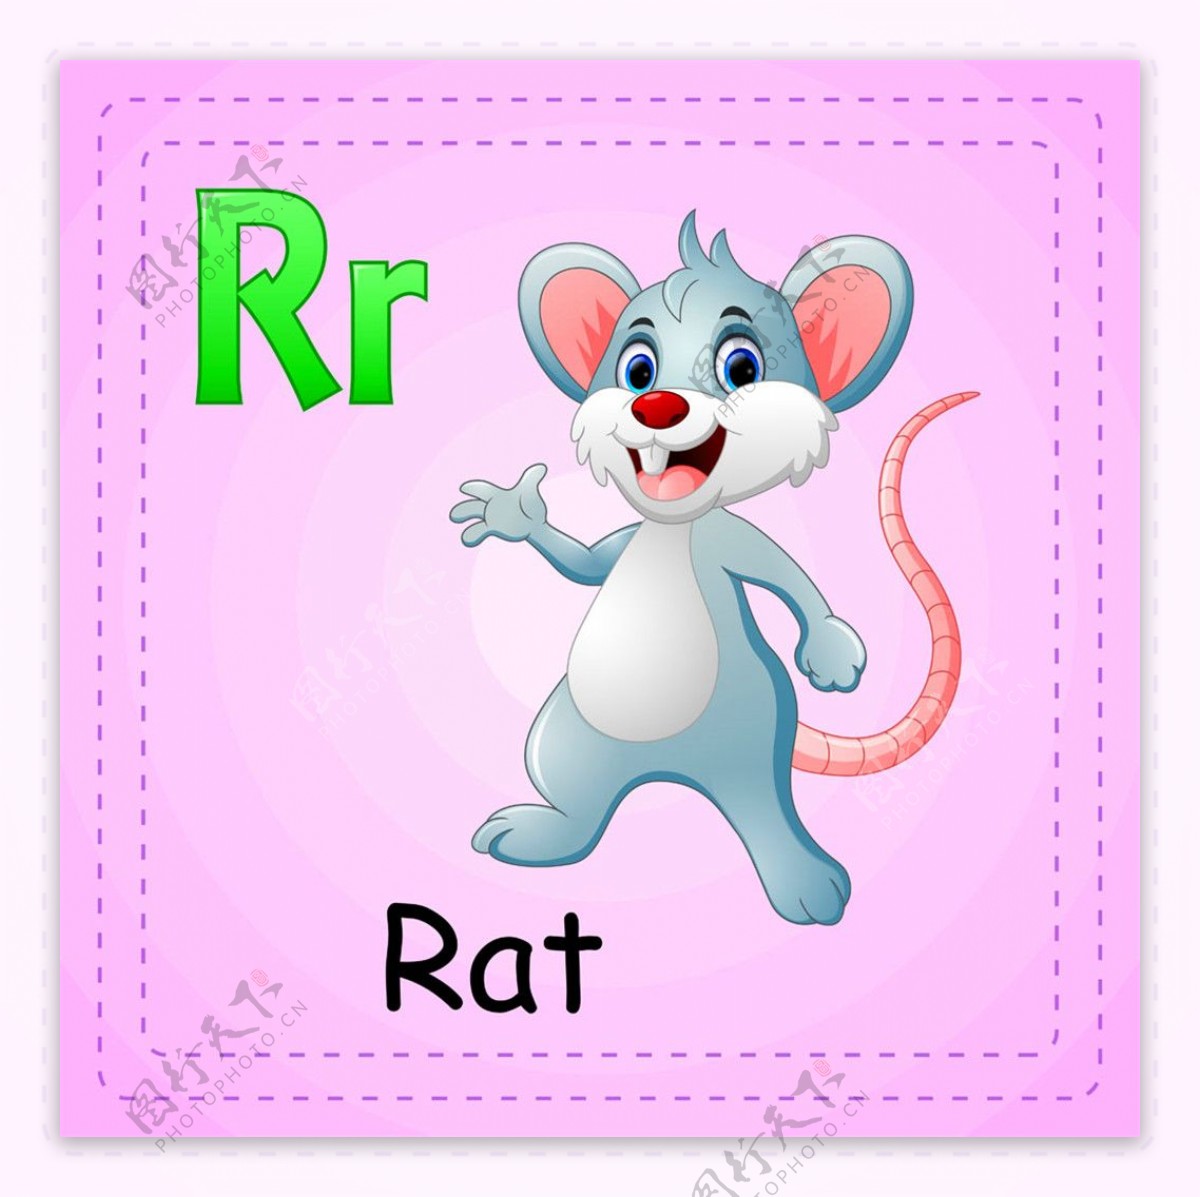 老鼠英文单词图片